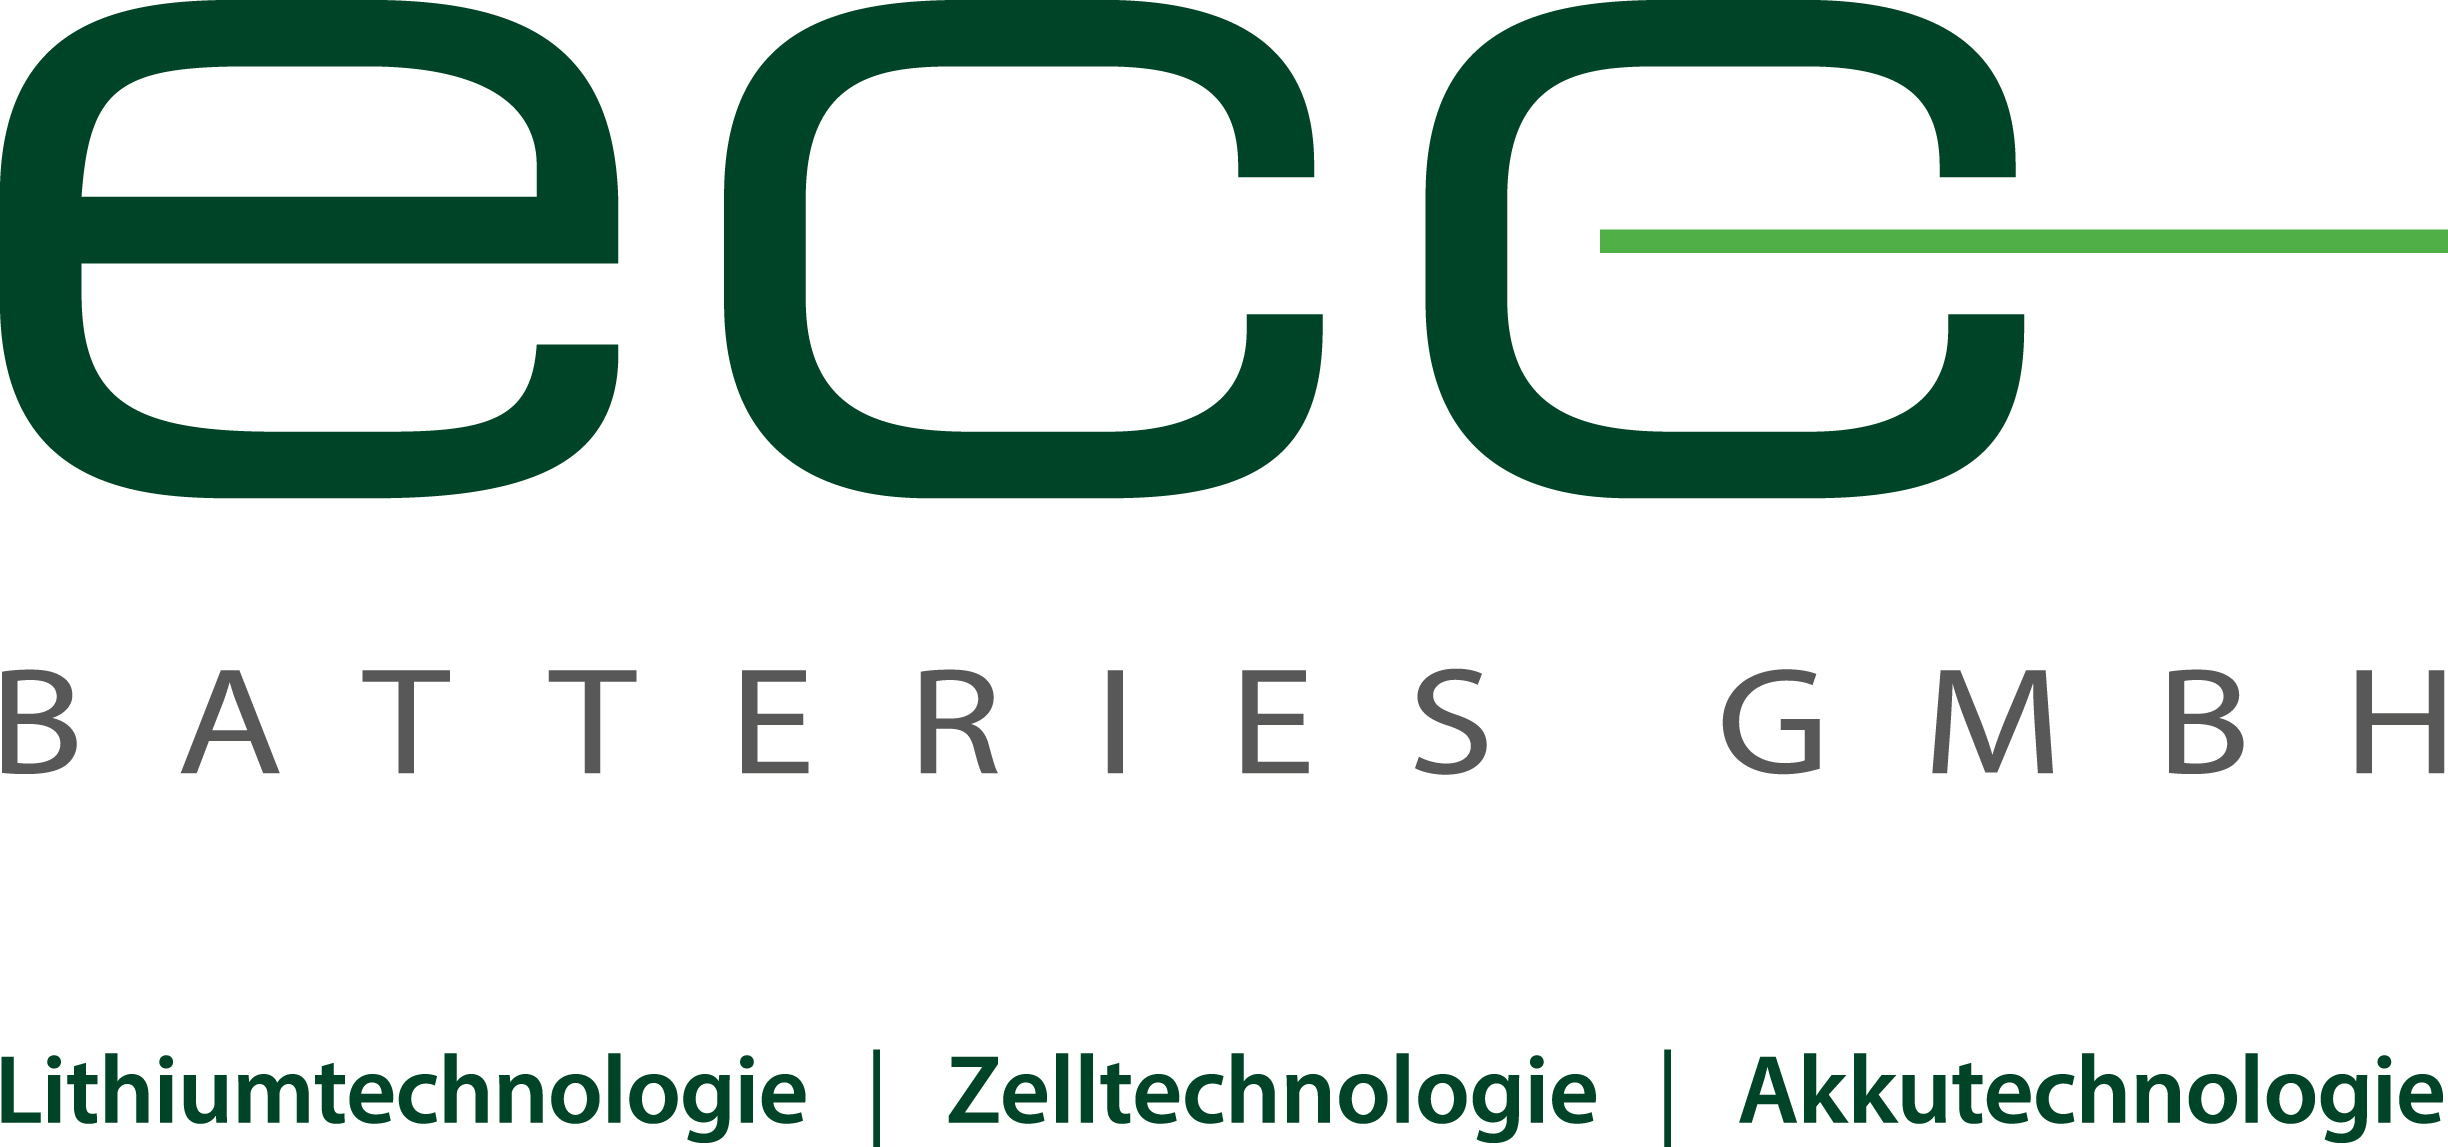 Logo_ECC_Batteries_Vektor_Standard_4c_mit_Zusatz_2014